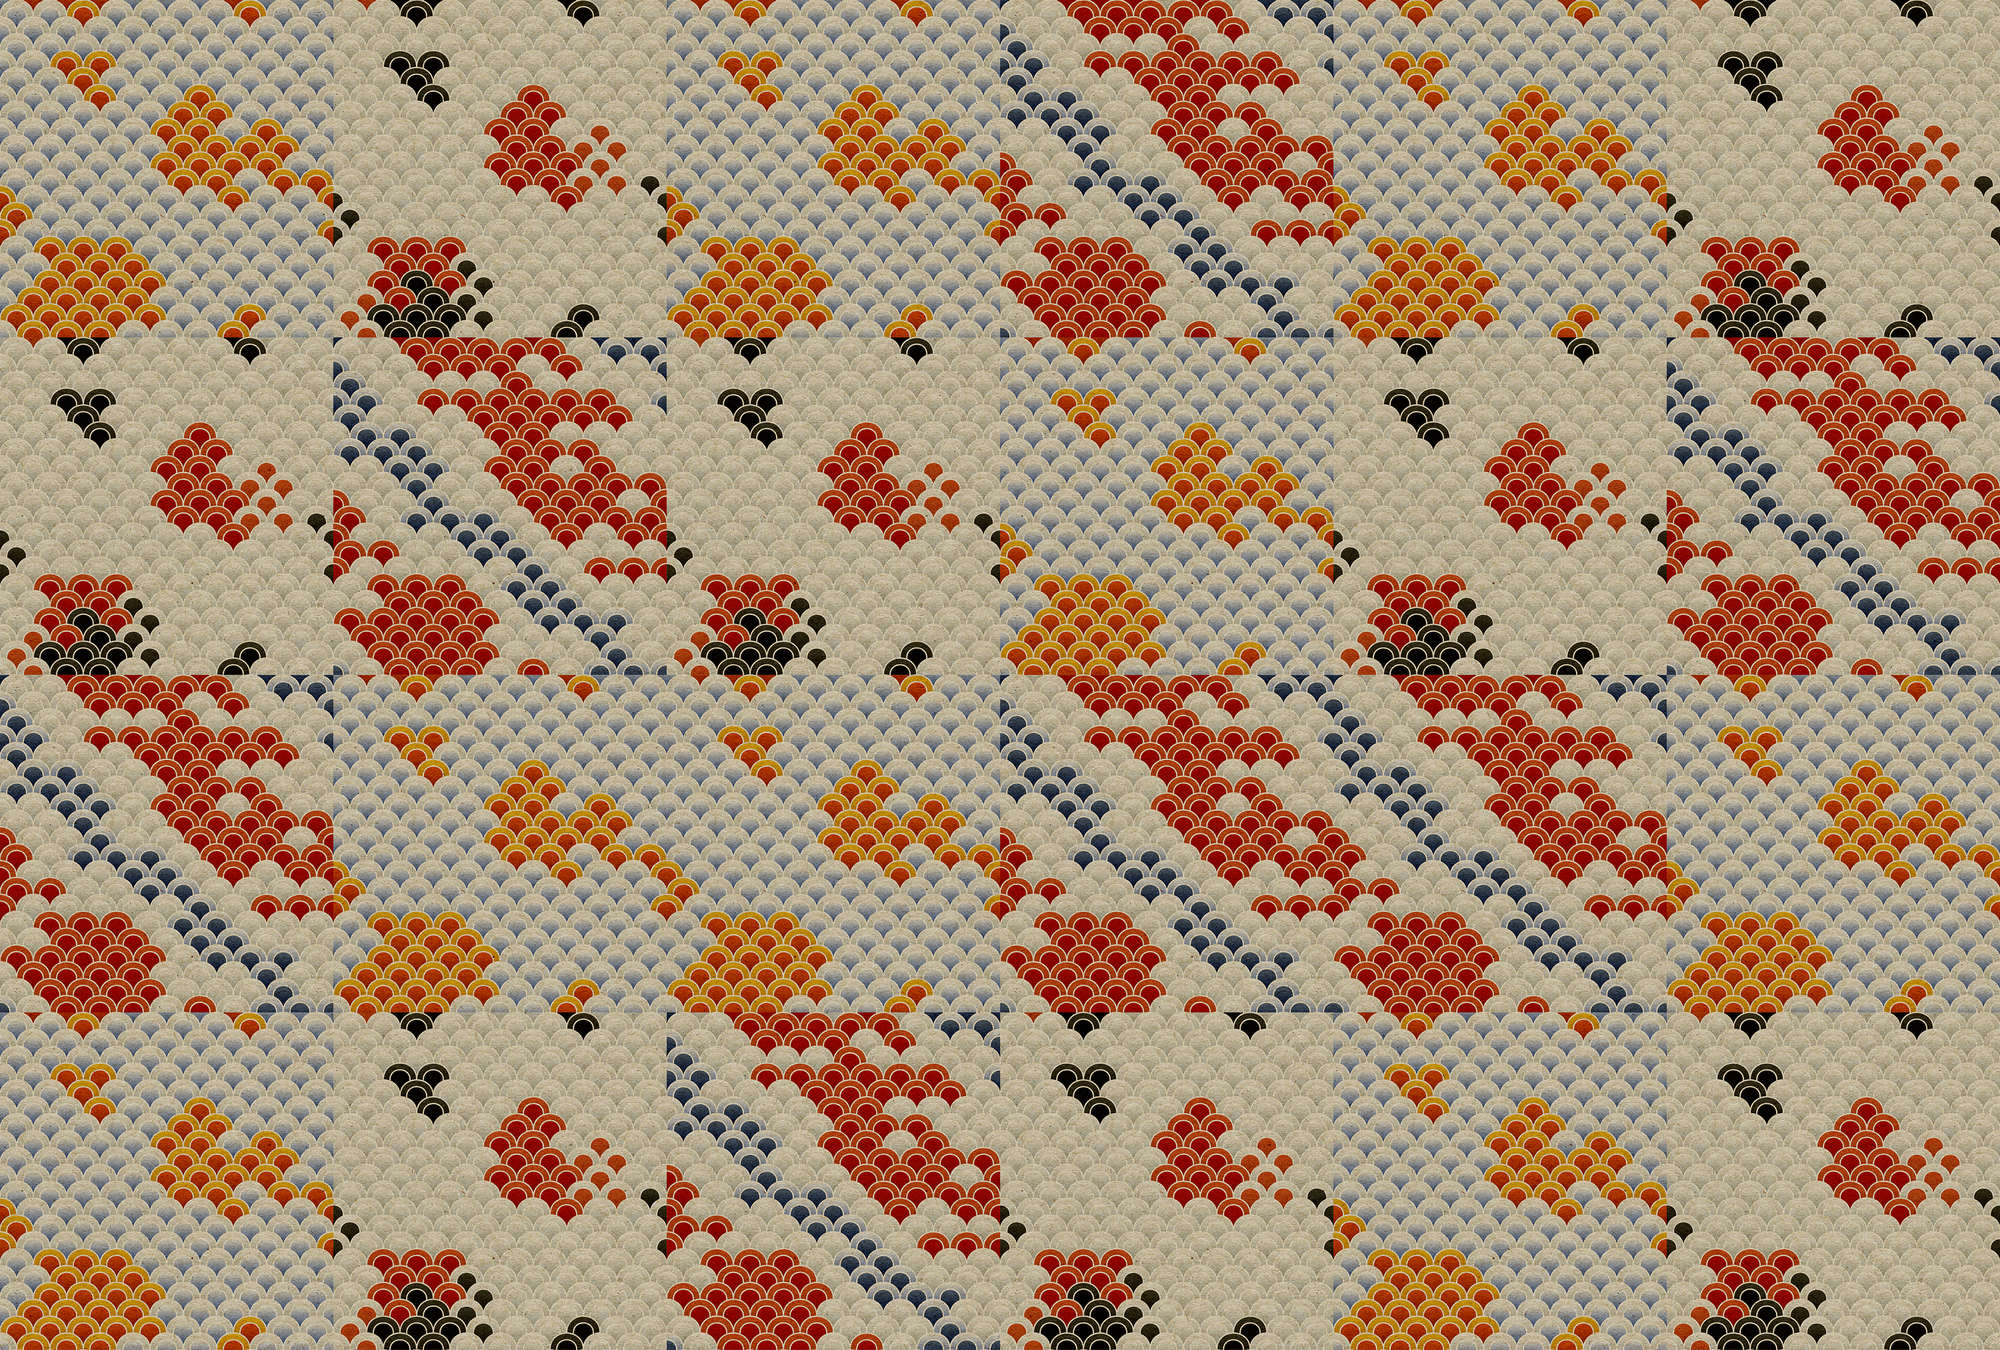             Koi 3 - Estanque koi abstracto en impresión digital sobre estructura de cartón - beige, naranja | nácar liso
        